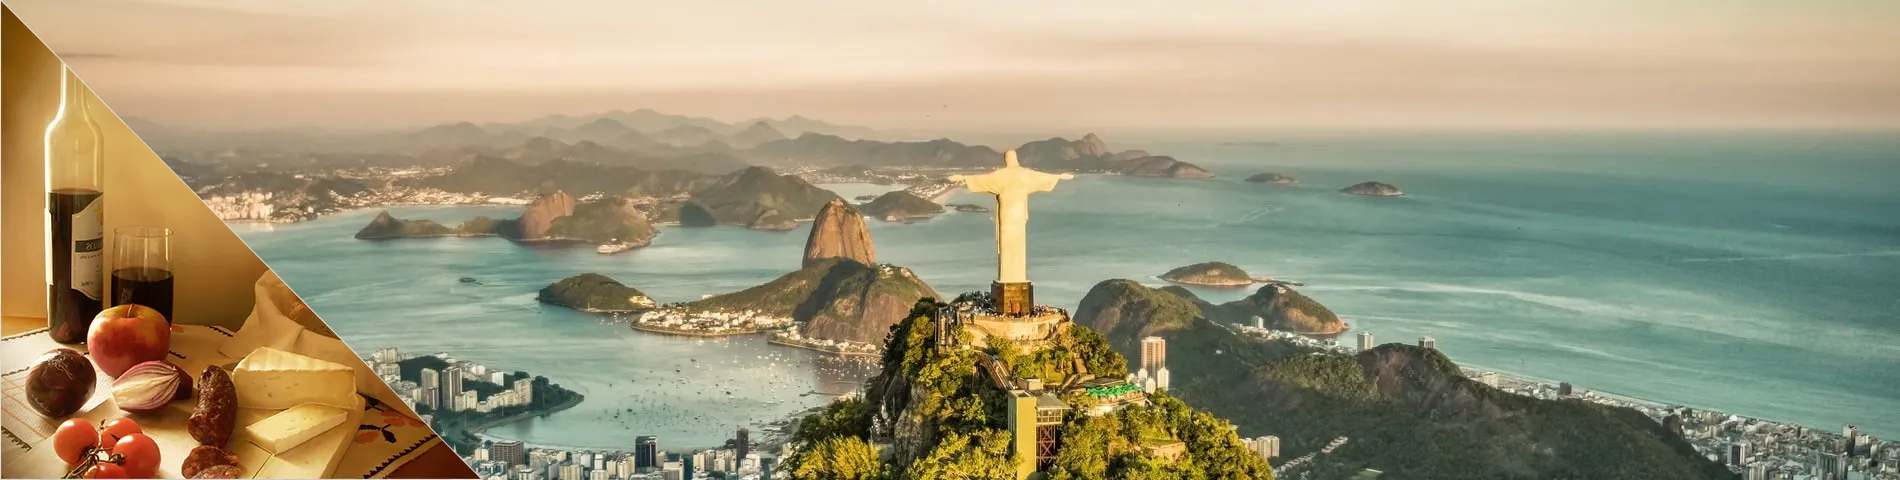 Rio de Janeiro - Portuguese & Culture